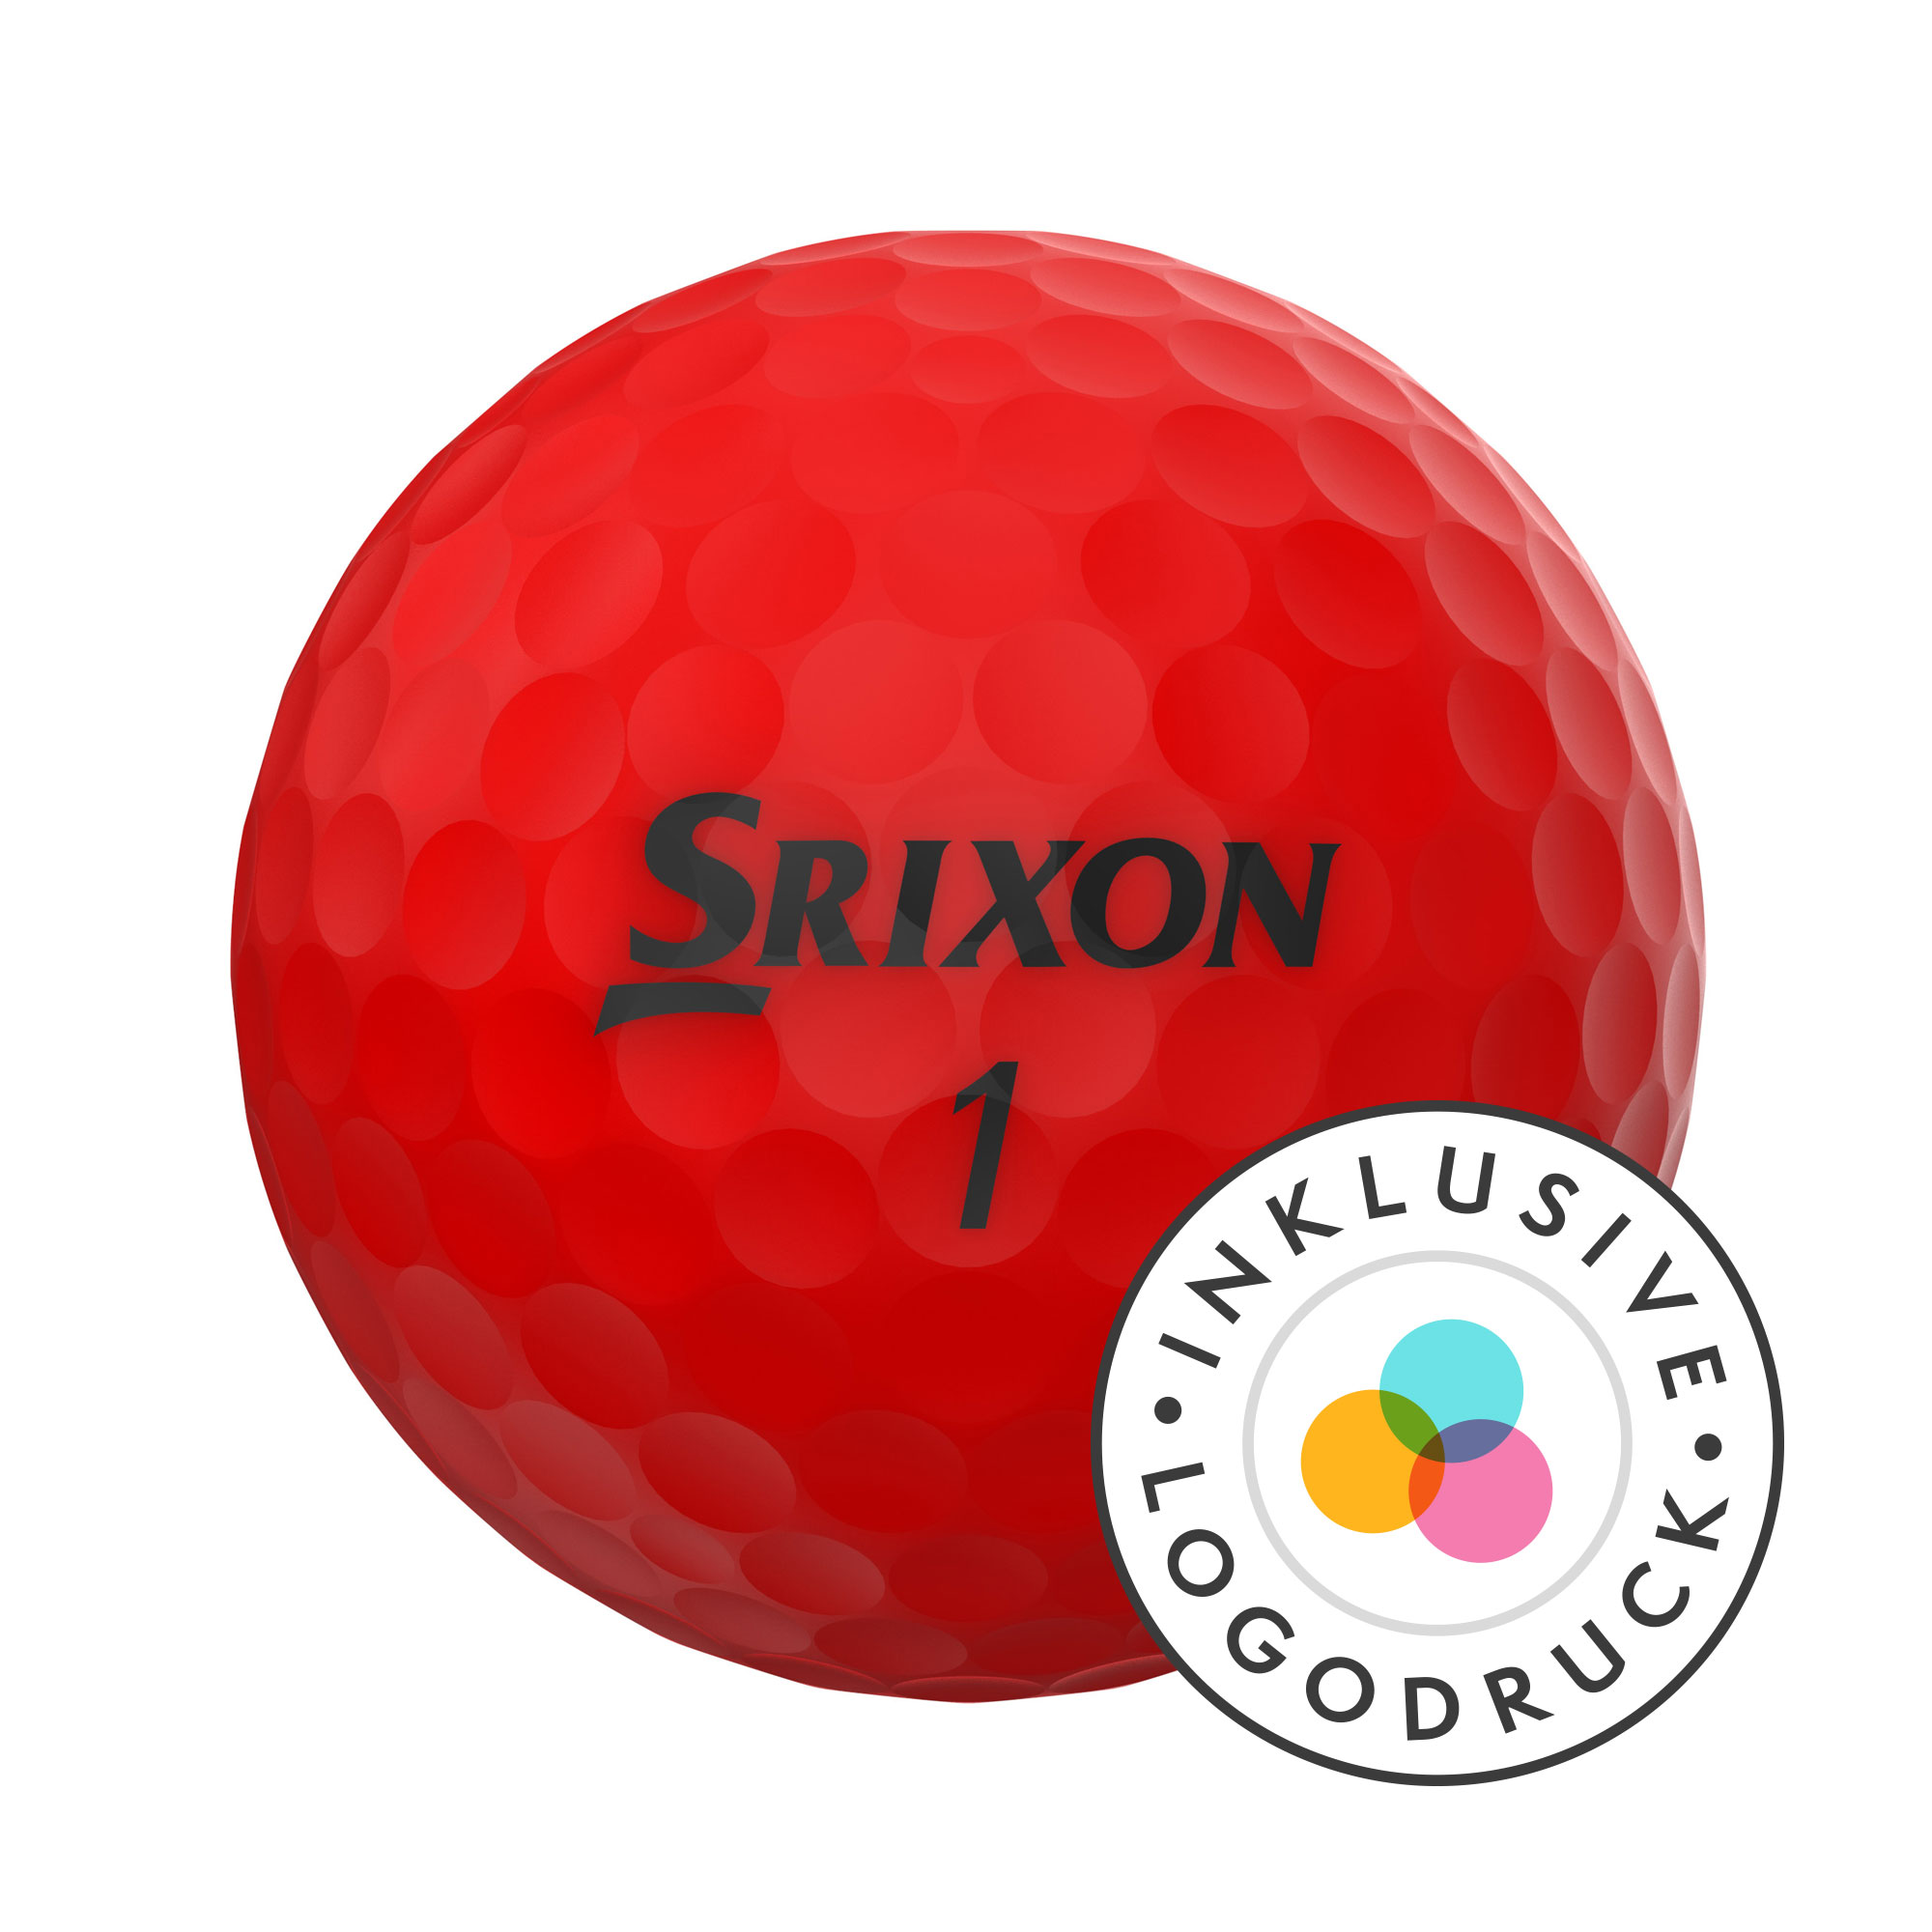 Srixon Soft Feel Golfbälle bedruckt, brite red (VPE à 12 Bälle)